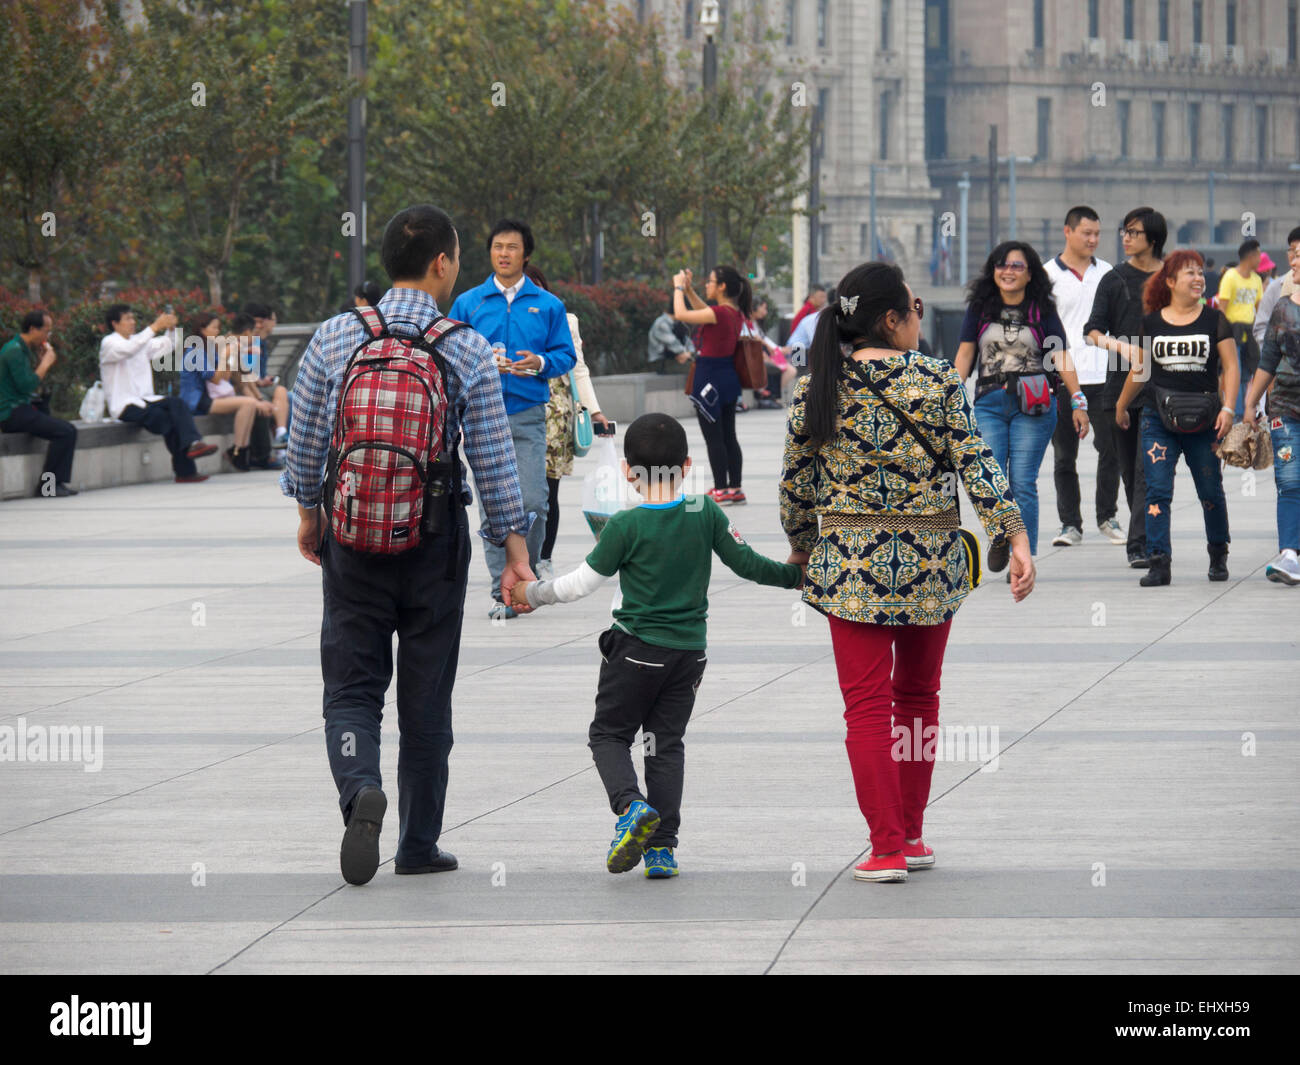 Chinesische Familie - junge Eltern Hand in Hand mit Kind Stockfoto